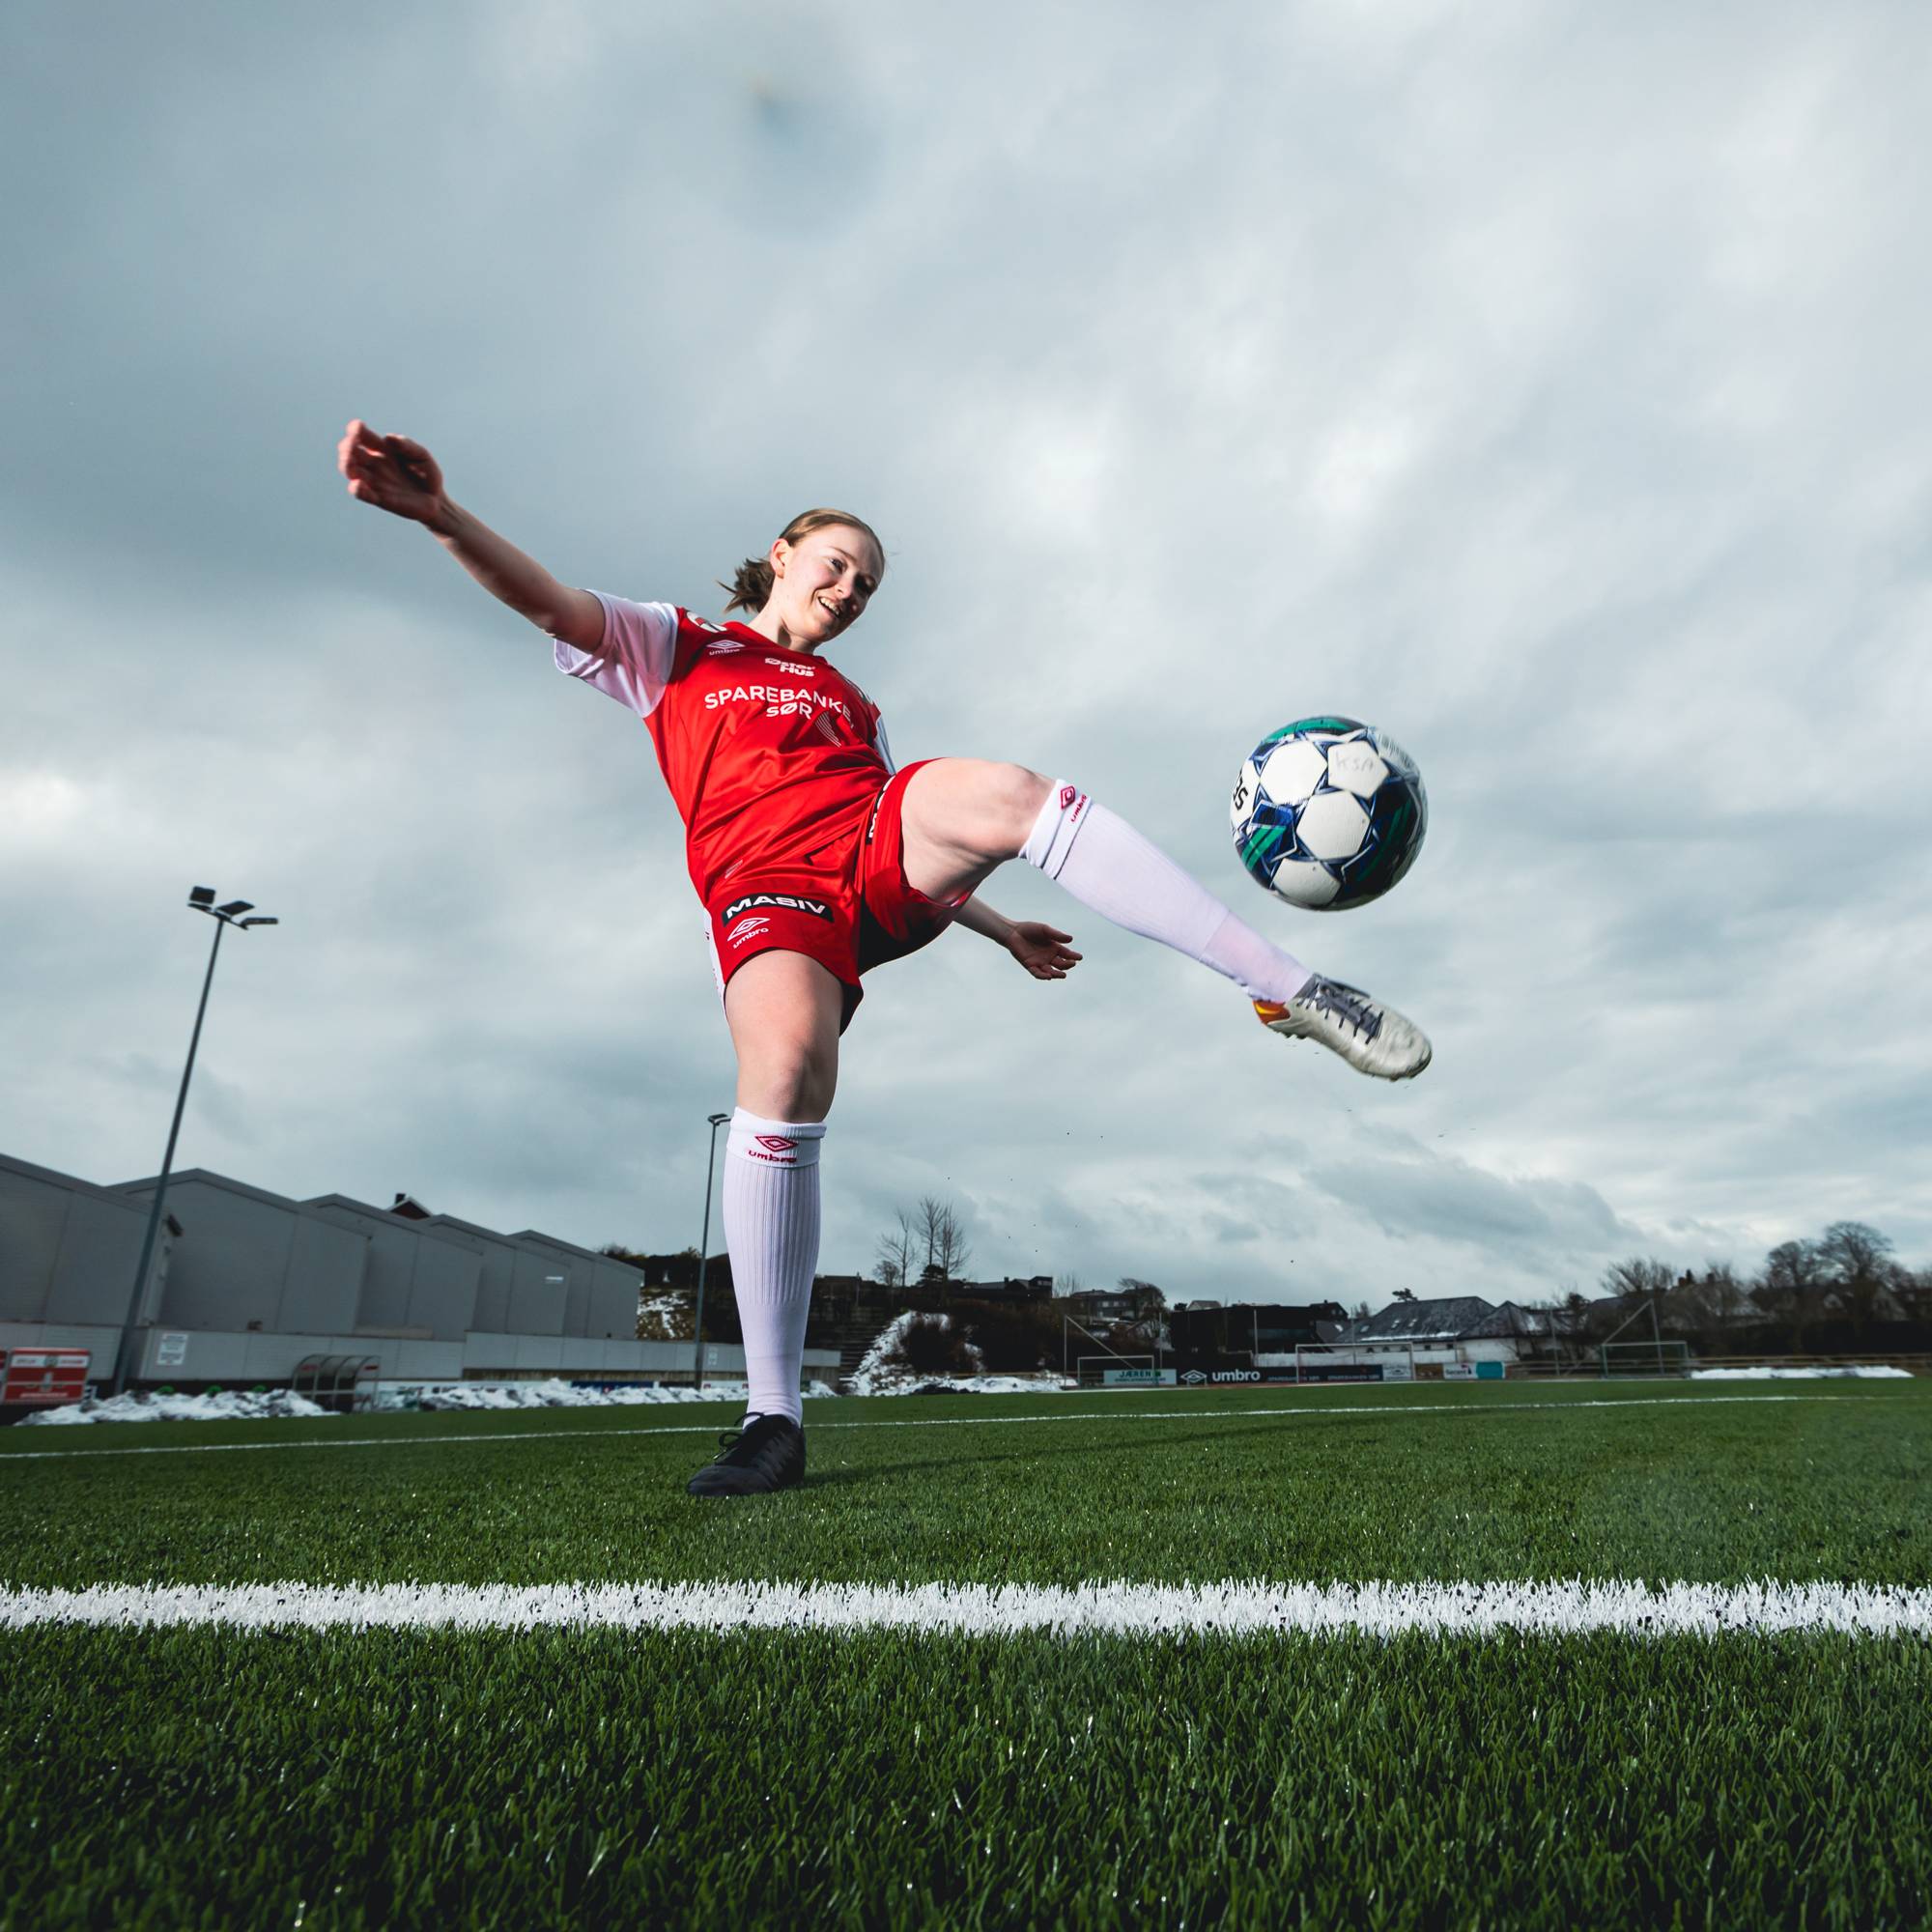 Bilde av Karina som sparker en fotball. Hun har på seg en rød og hvit fotballdrakt og er plassert på en fotballstadion. 